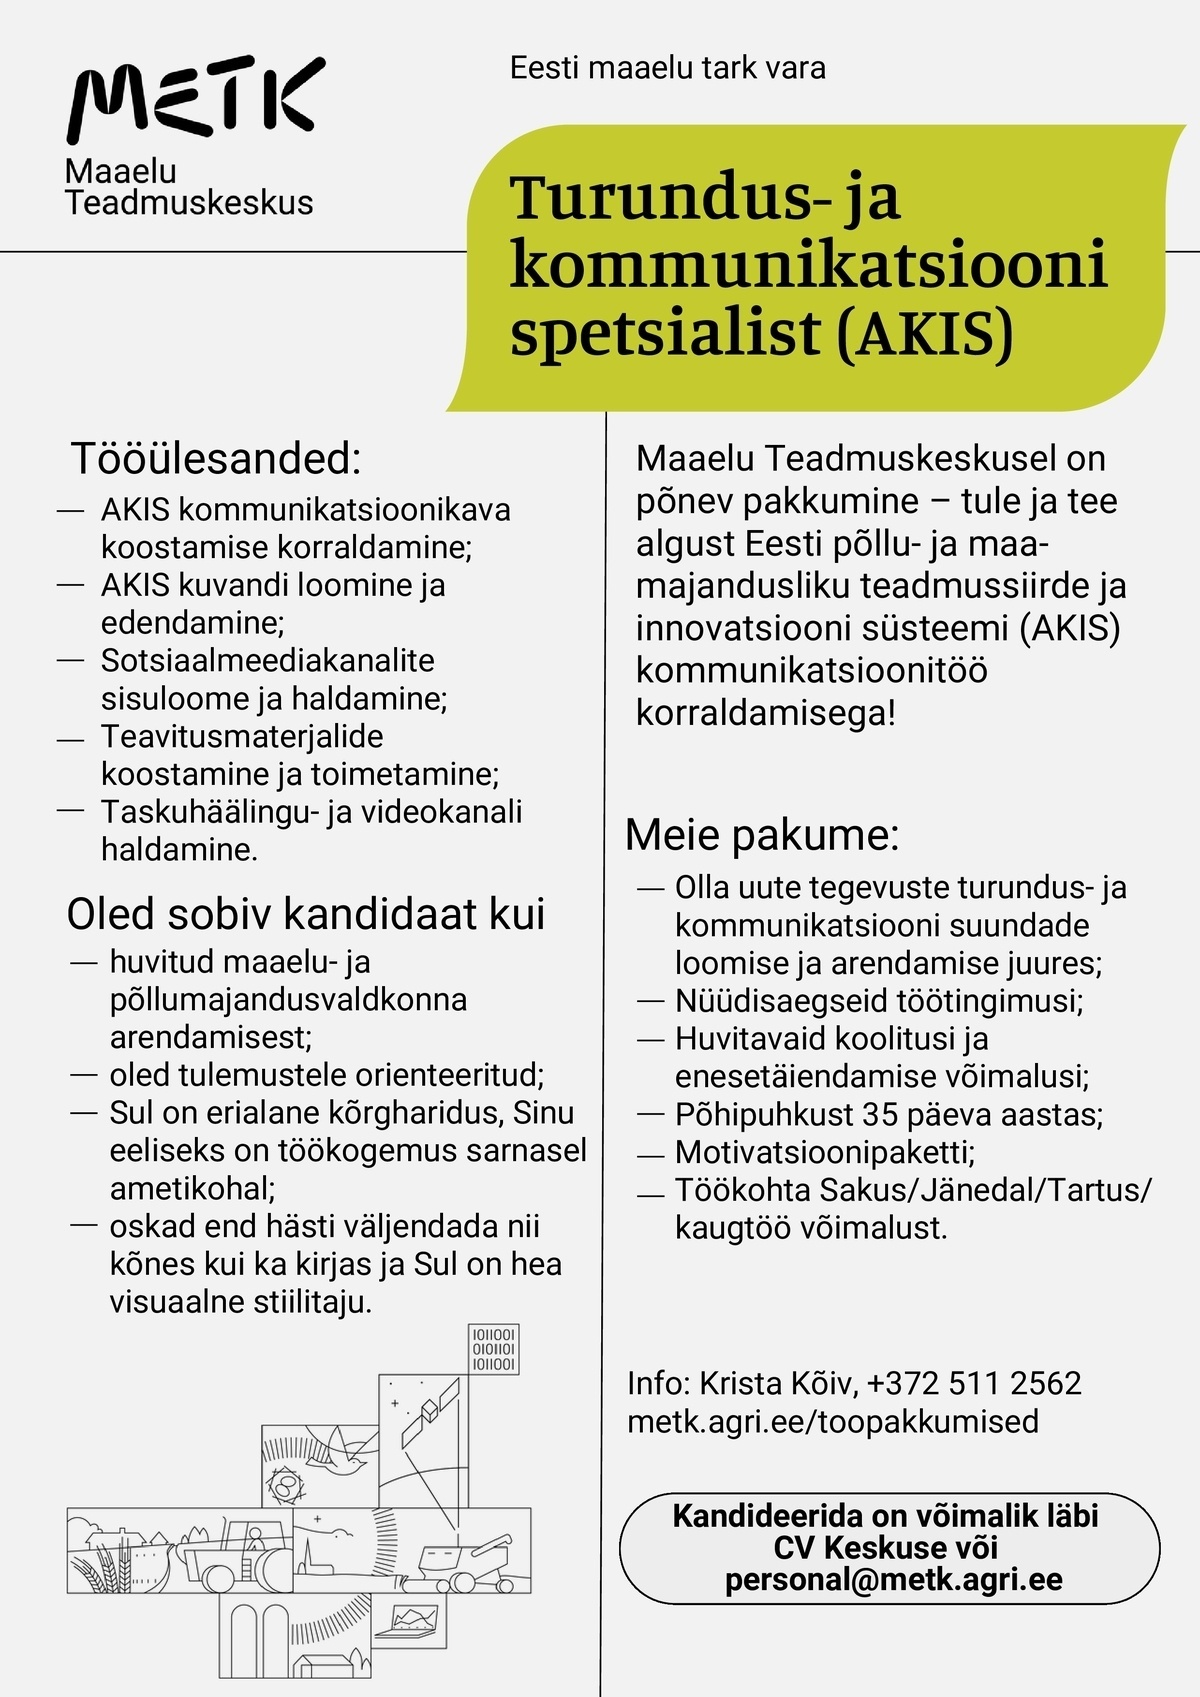 Maaelu Teadmuskeskus Turundus- ja kommunikatsioonispetsialist (AKIS)